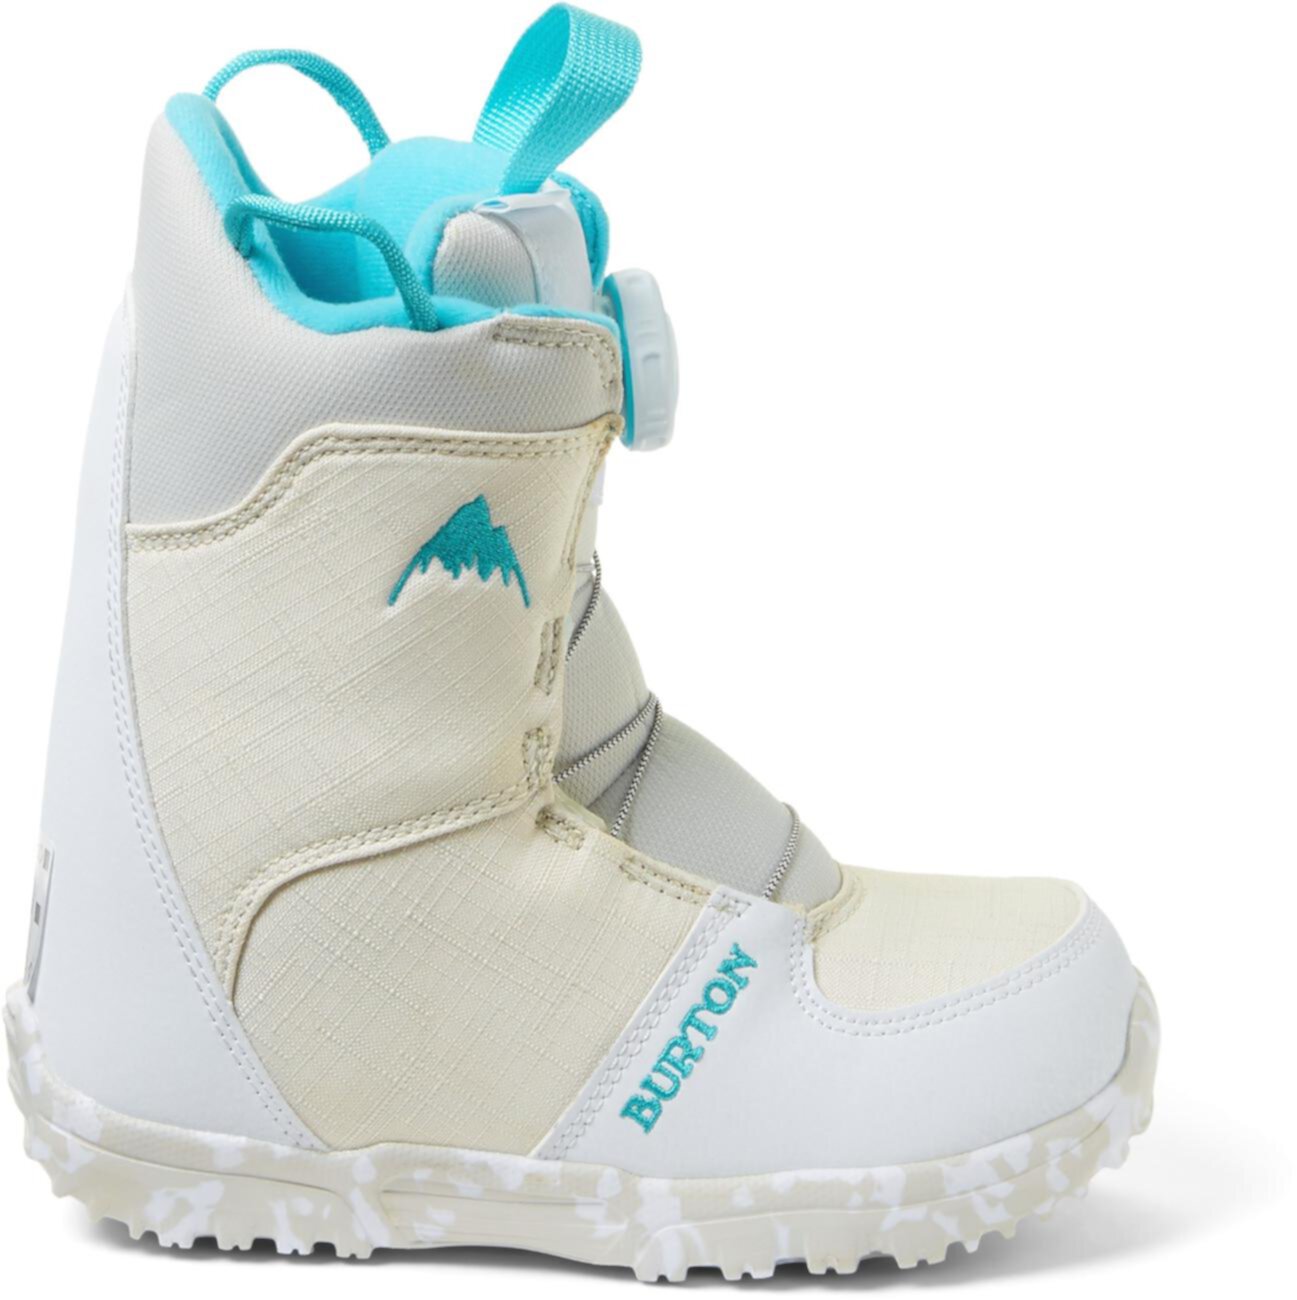 Ботинки для сноуборда Grom Boa - белые - Детские - 2019/2020 Burton